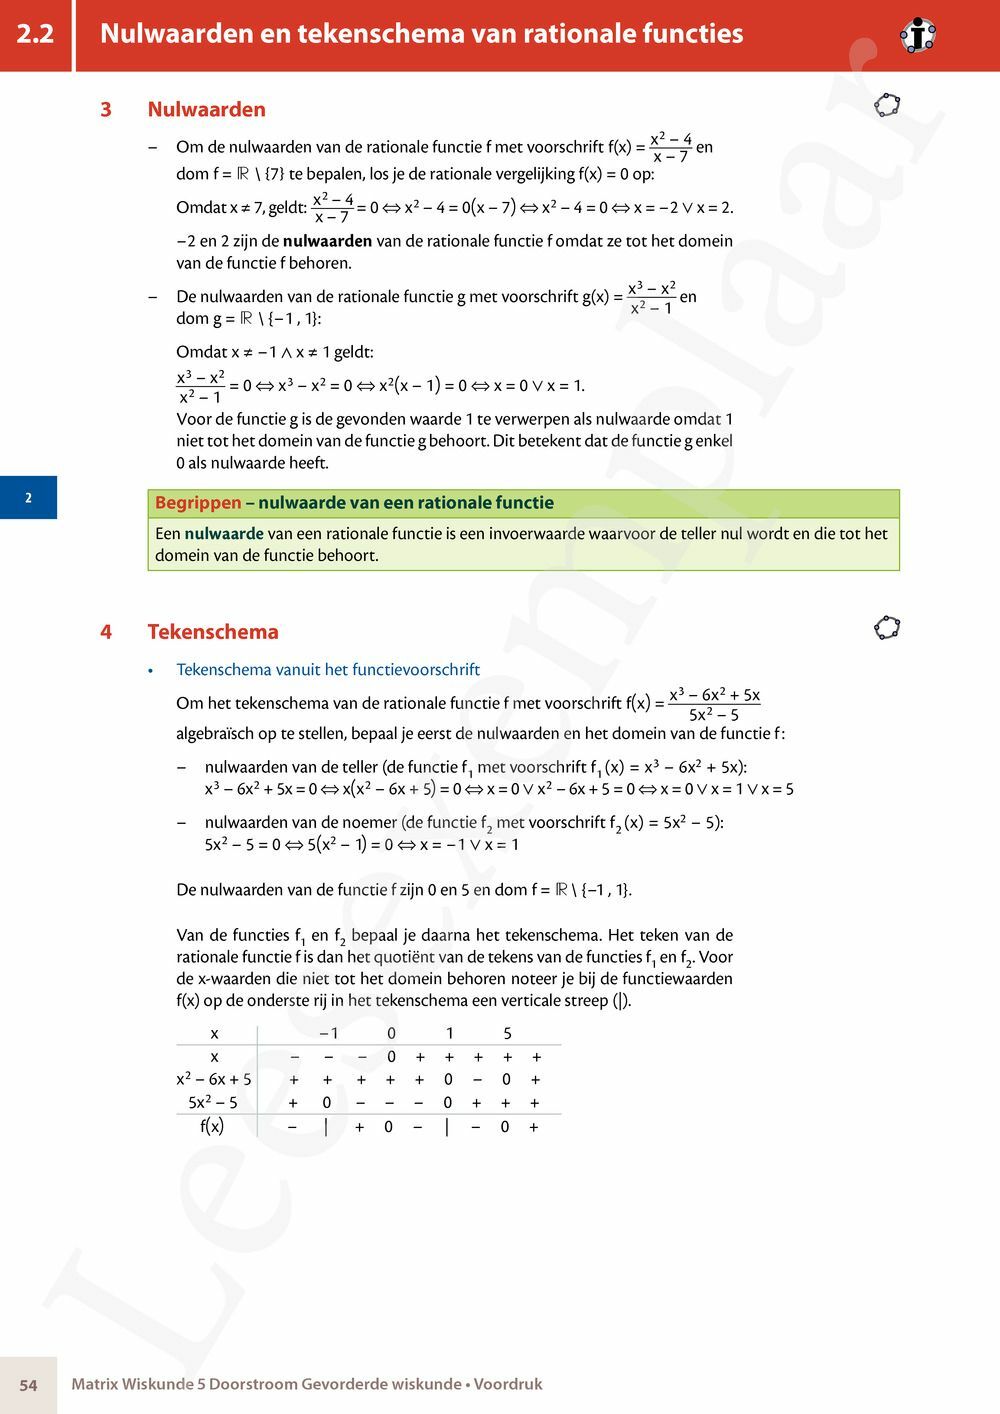 Preview: Matrix Wiskunde 5 Analyse deel 1: functieonderzoek Doorstroom Gevorderde wiskunde Handboek (incl. Pelckmans Portaal)